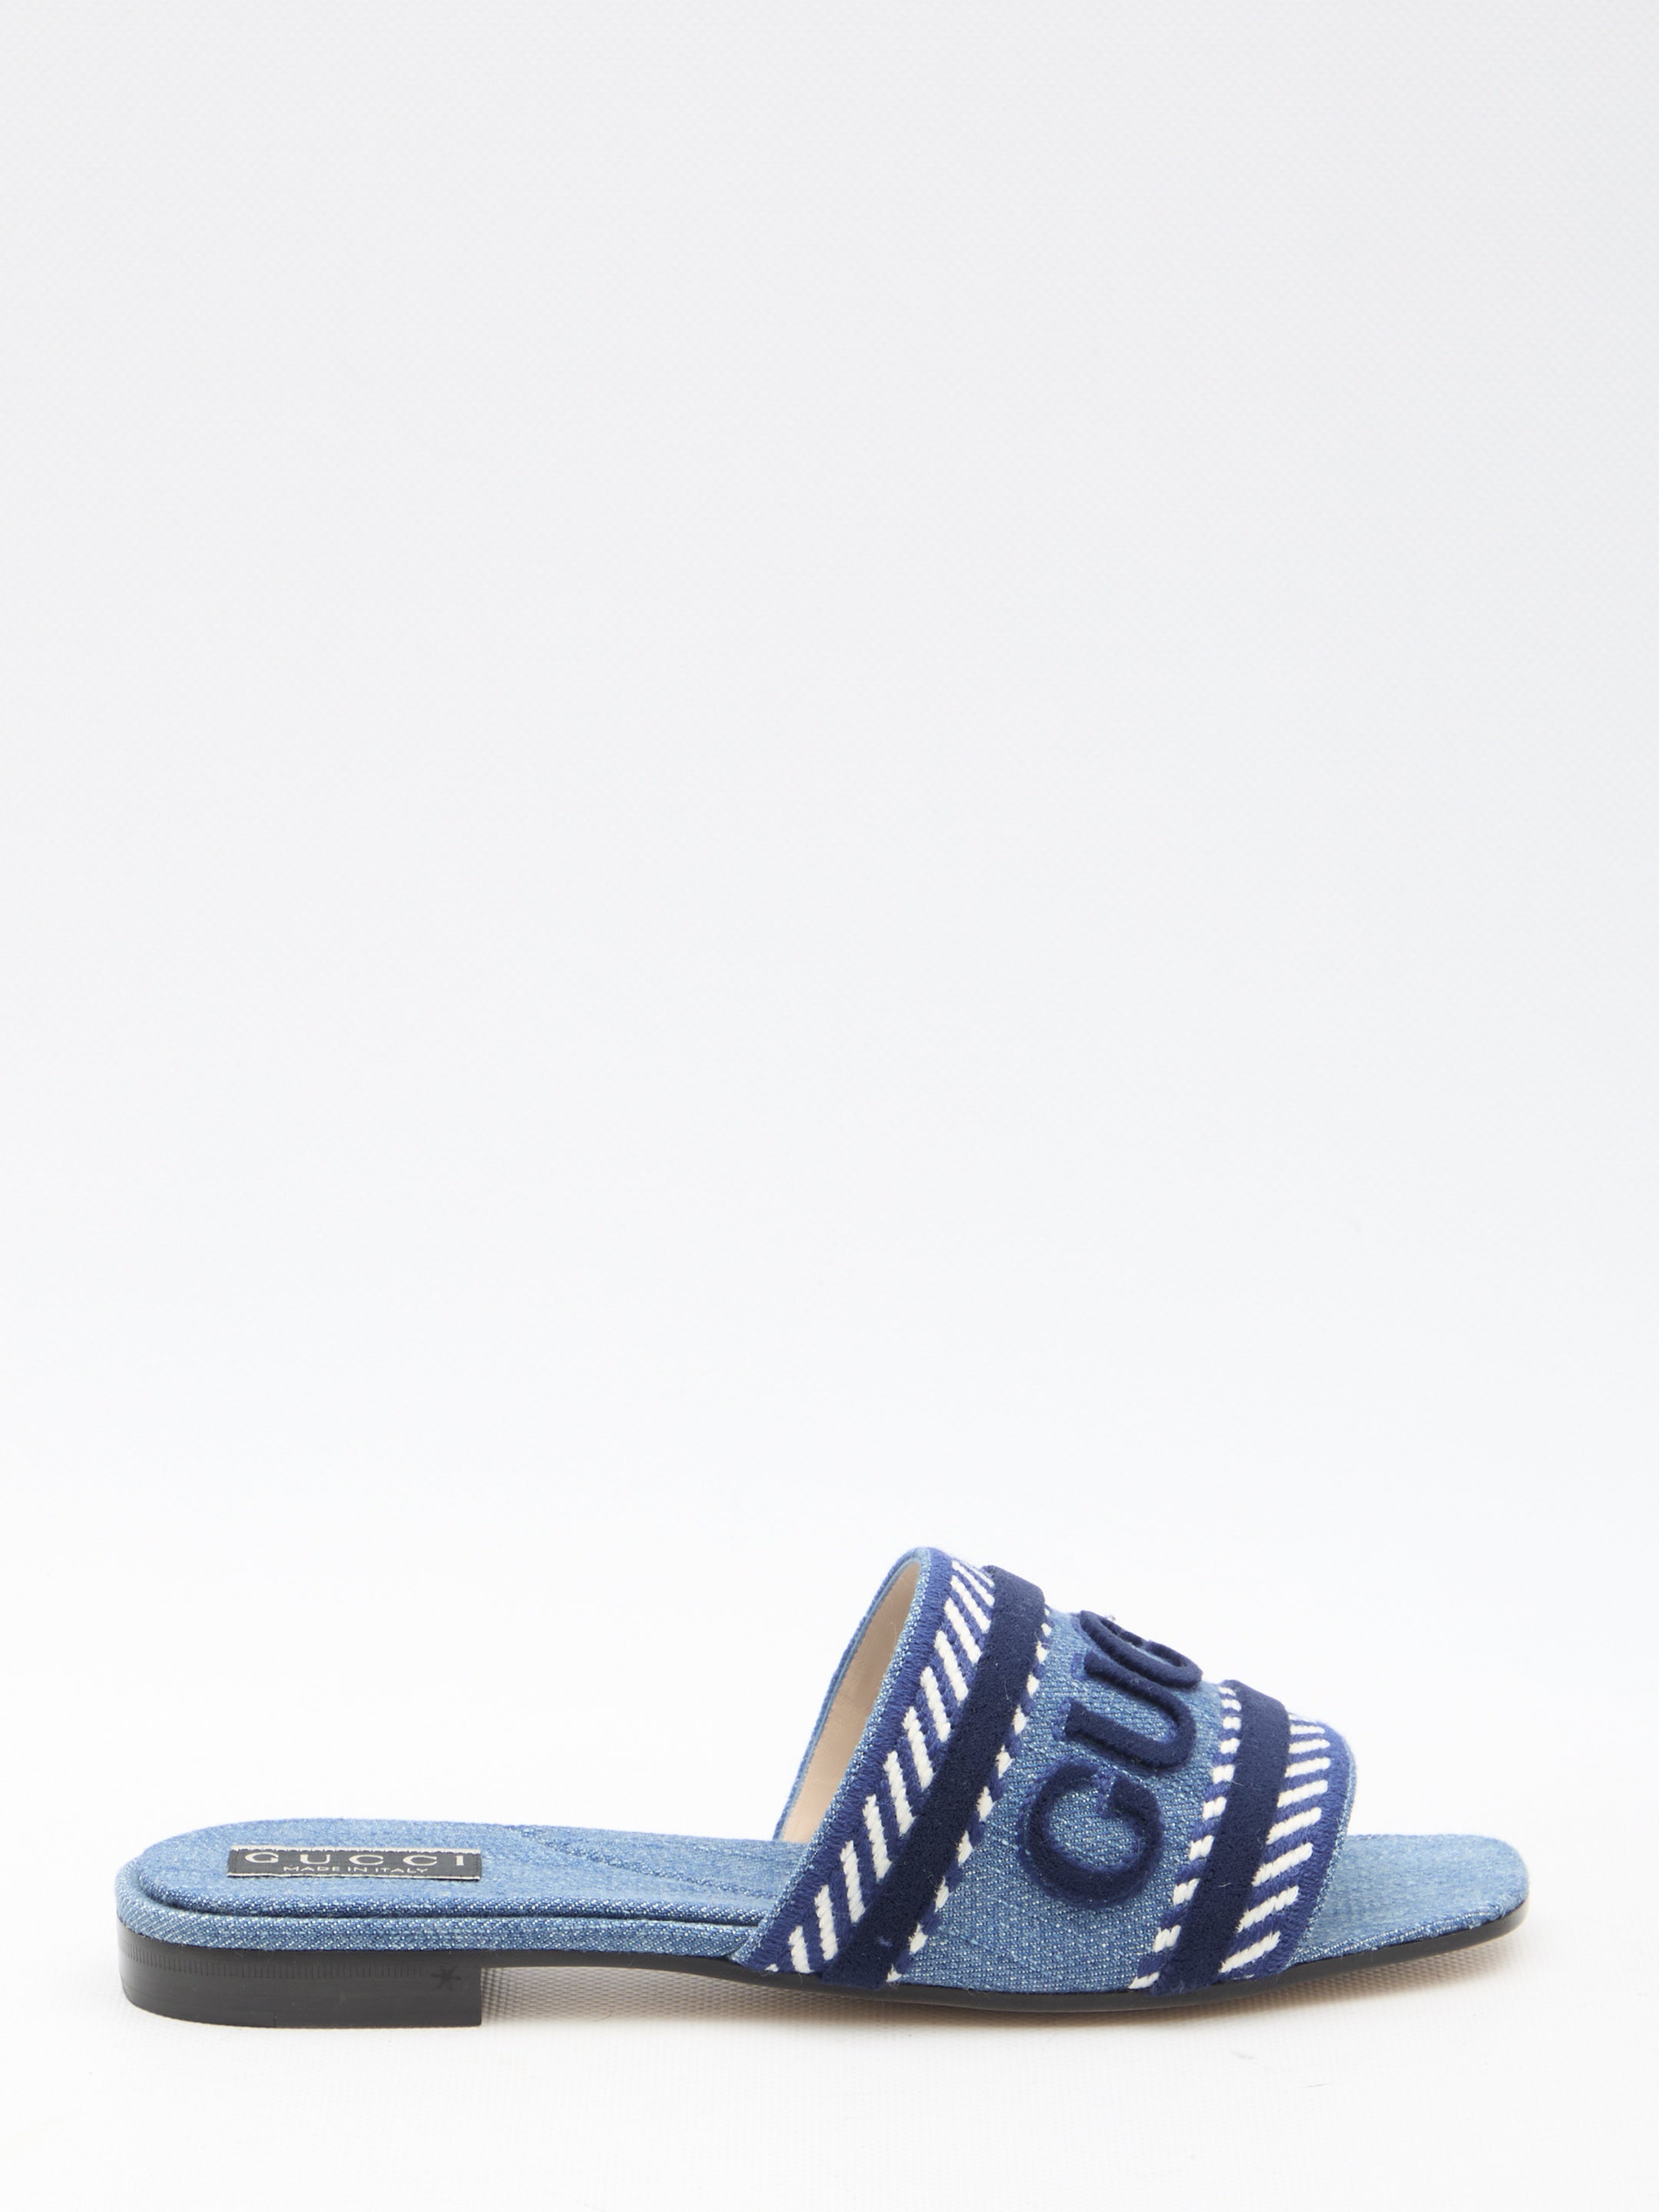 Gucci Slider Sandals